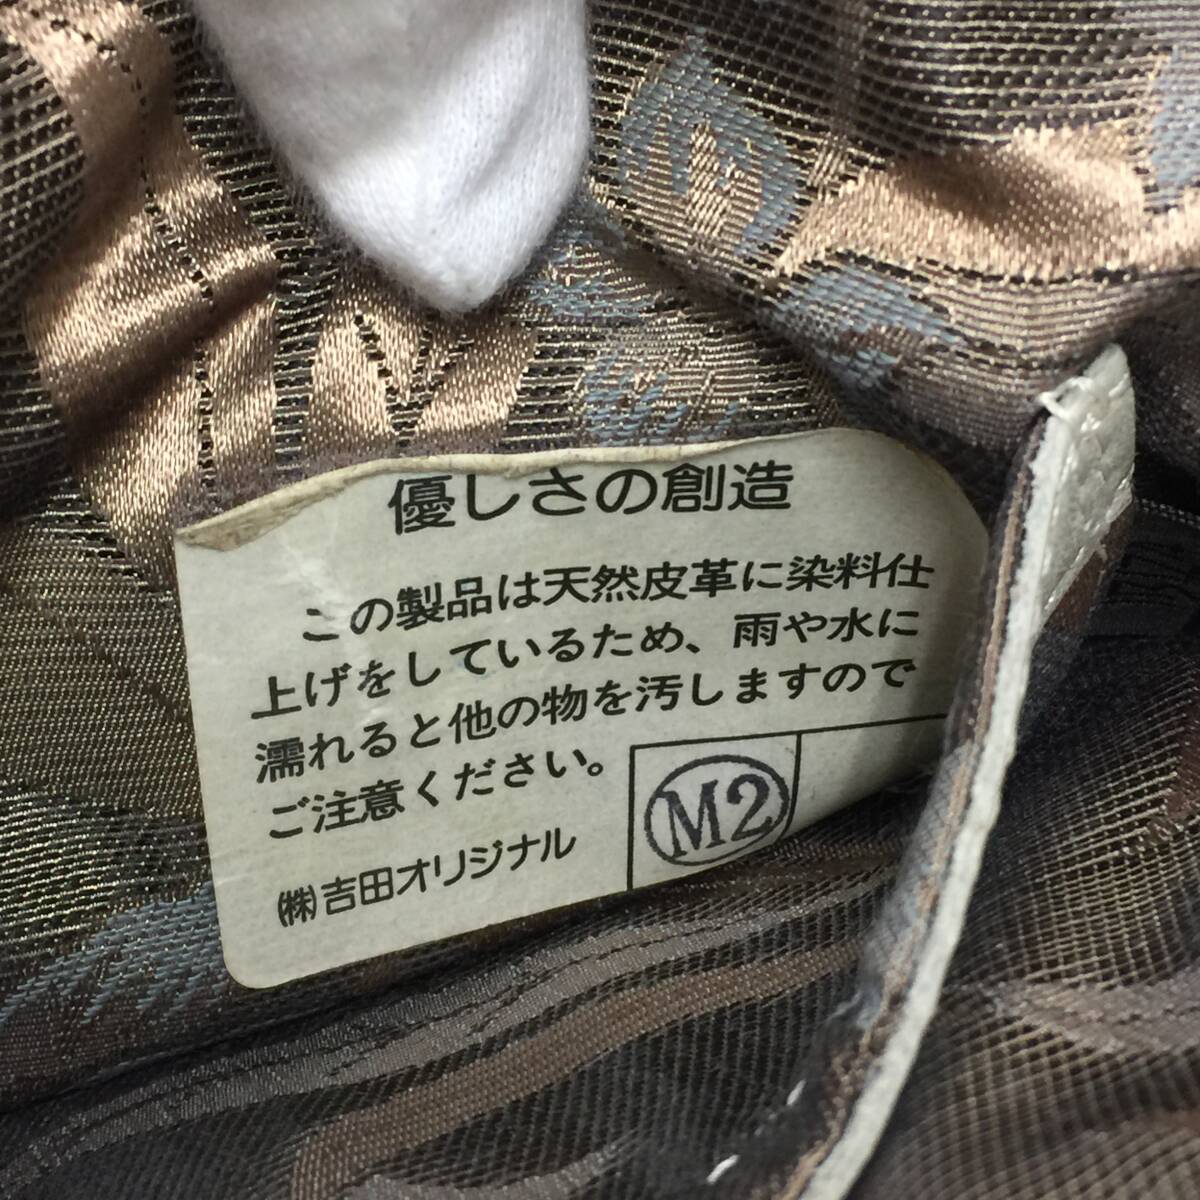 112 IBIZA イビザ レザー ショルダーバッグ ポシェット タッセル 縦型 本革 皮革 鞄 バッグ かばん レディース ライトグレー系の画像10